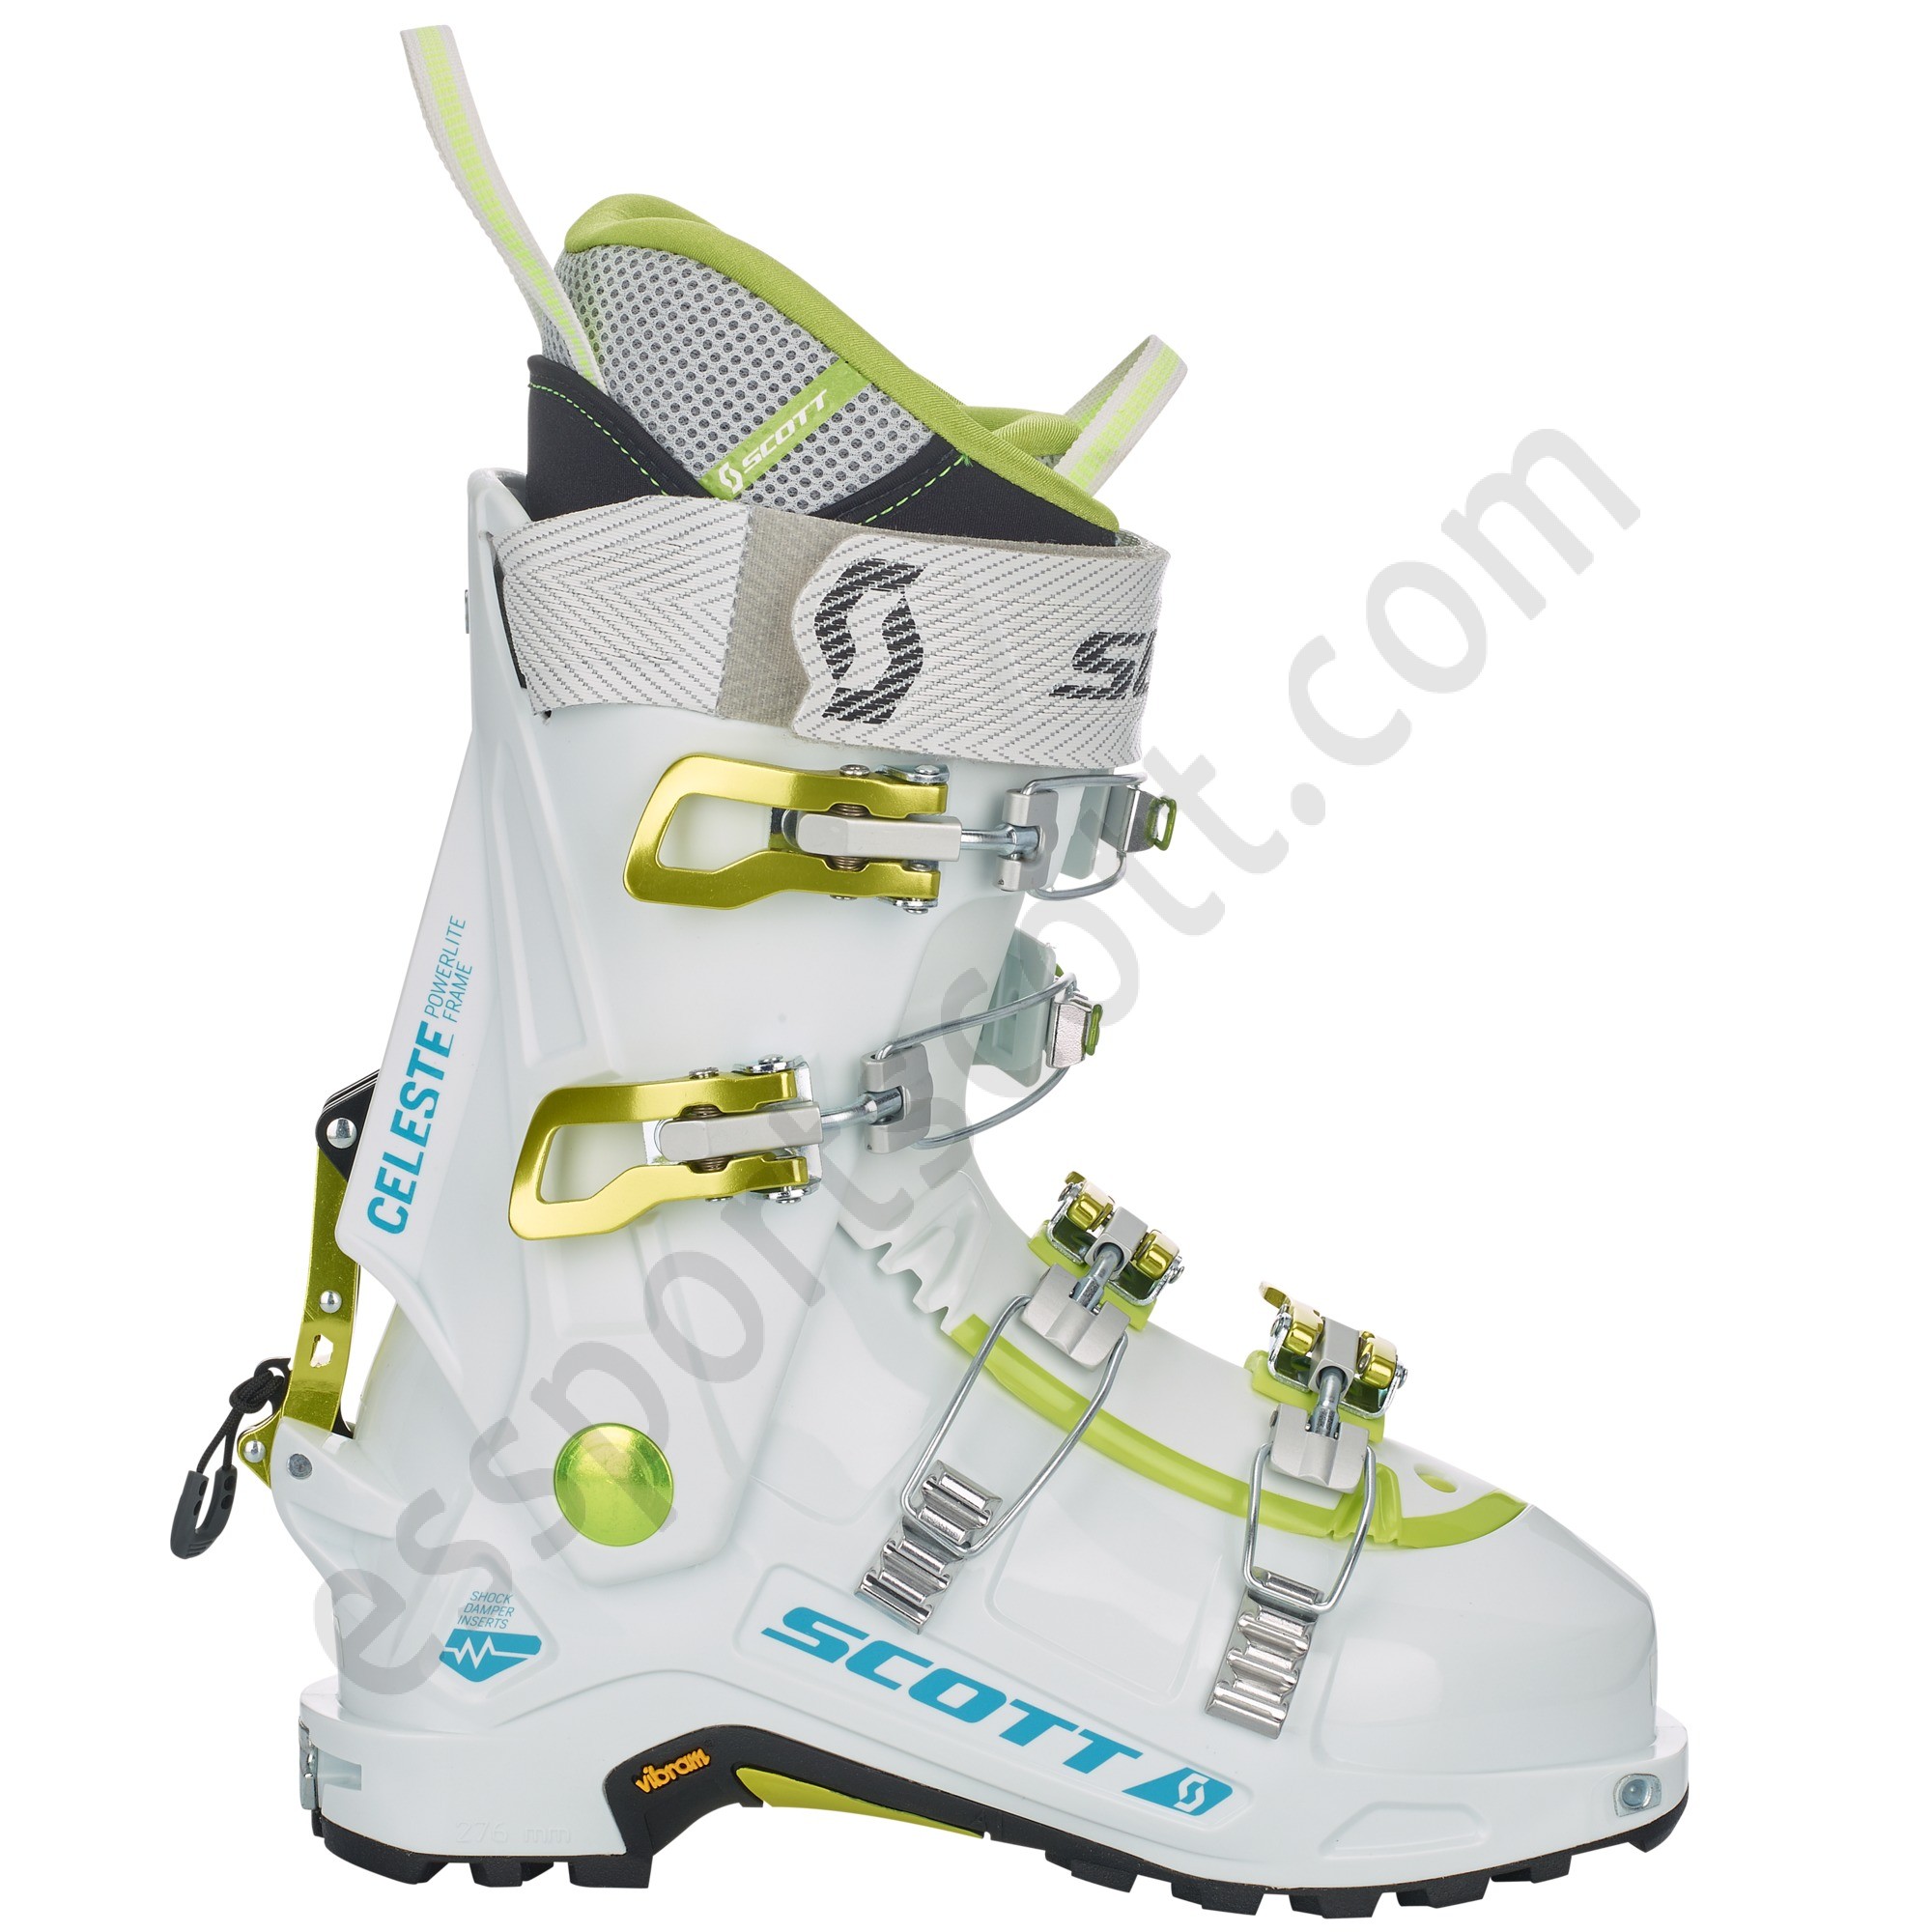 Scott Tienda ◇ Celeste Women's Ski Boot - Scott Tienda ◇ Celeste Women's Ski Boot